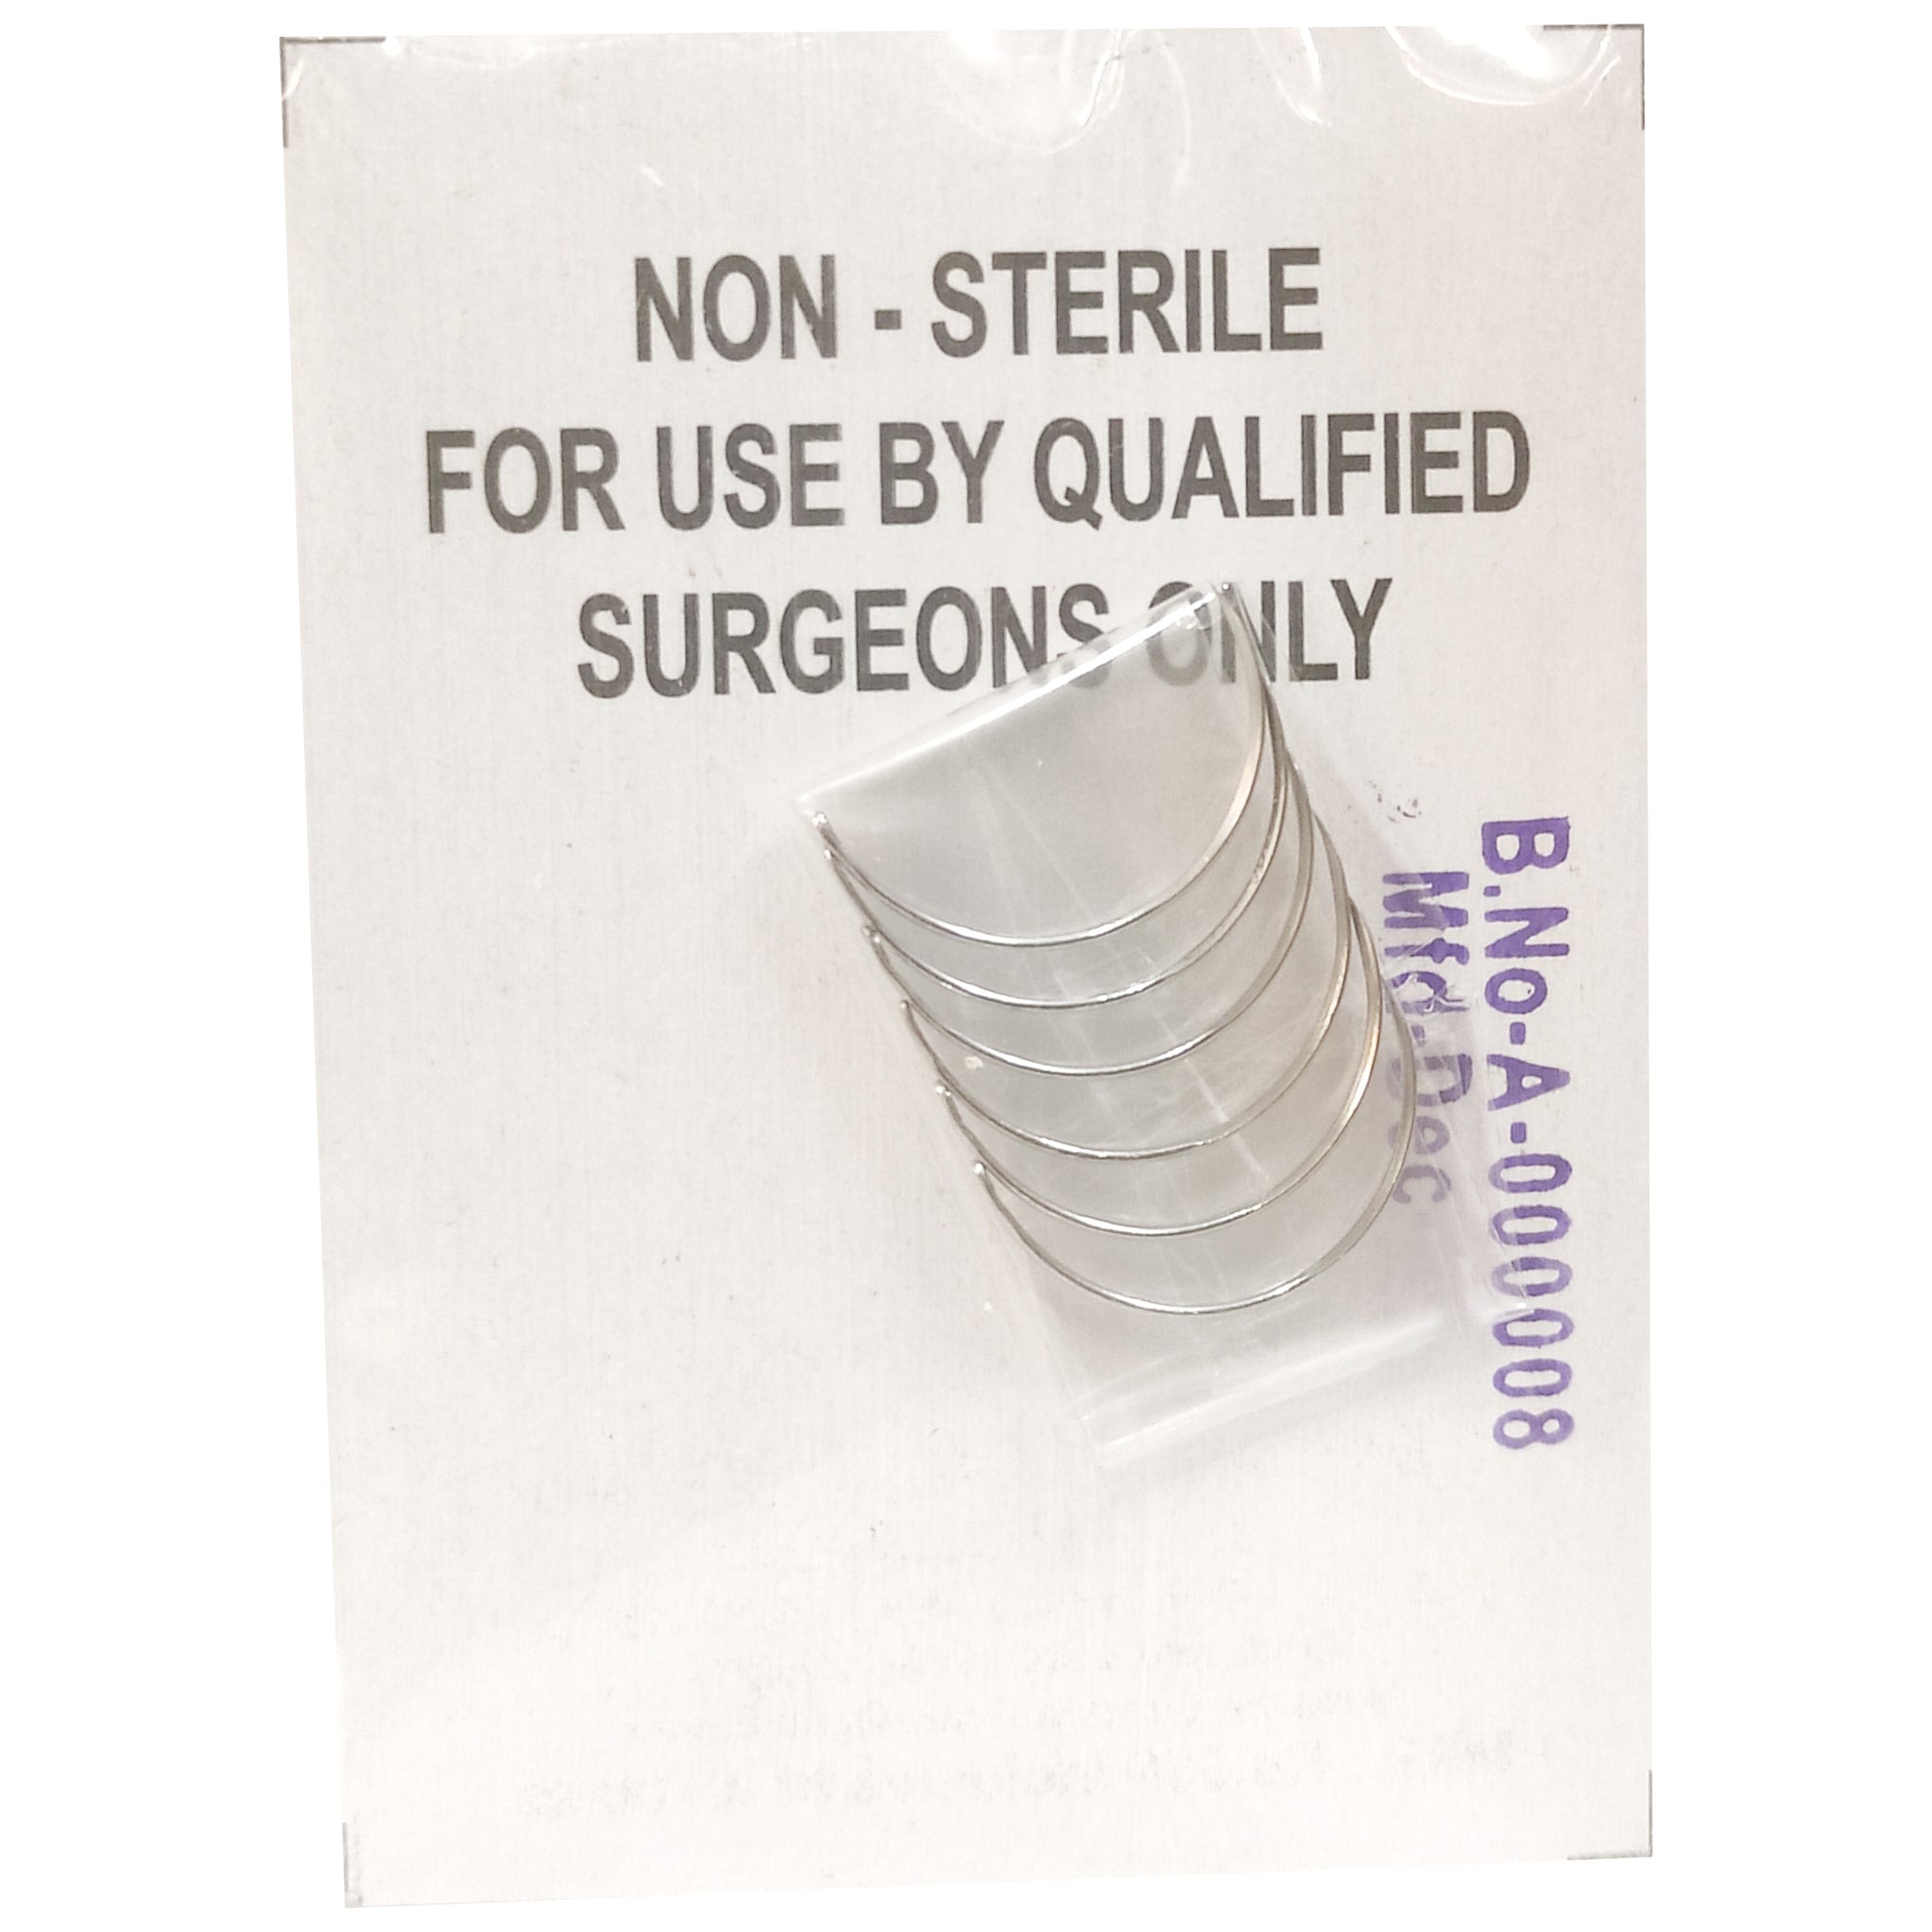 Medi Edge Suture Needles Non Sterile